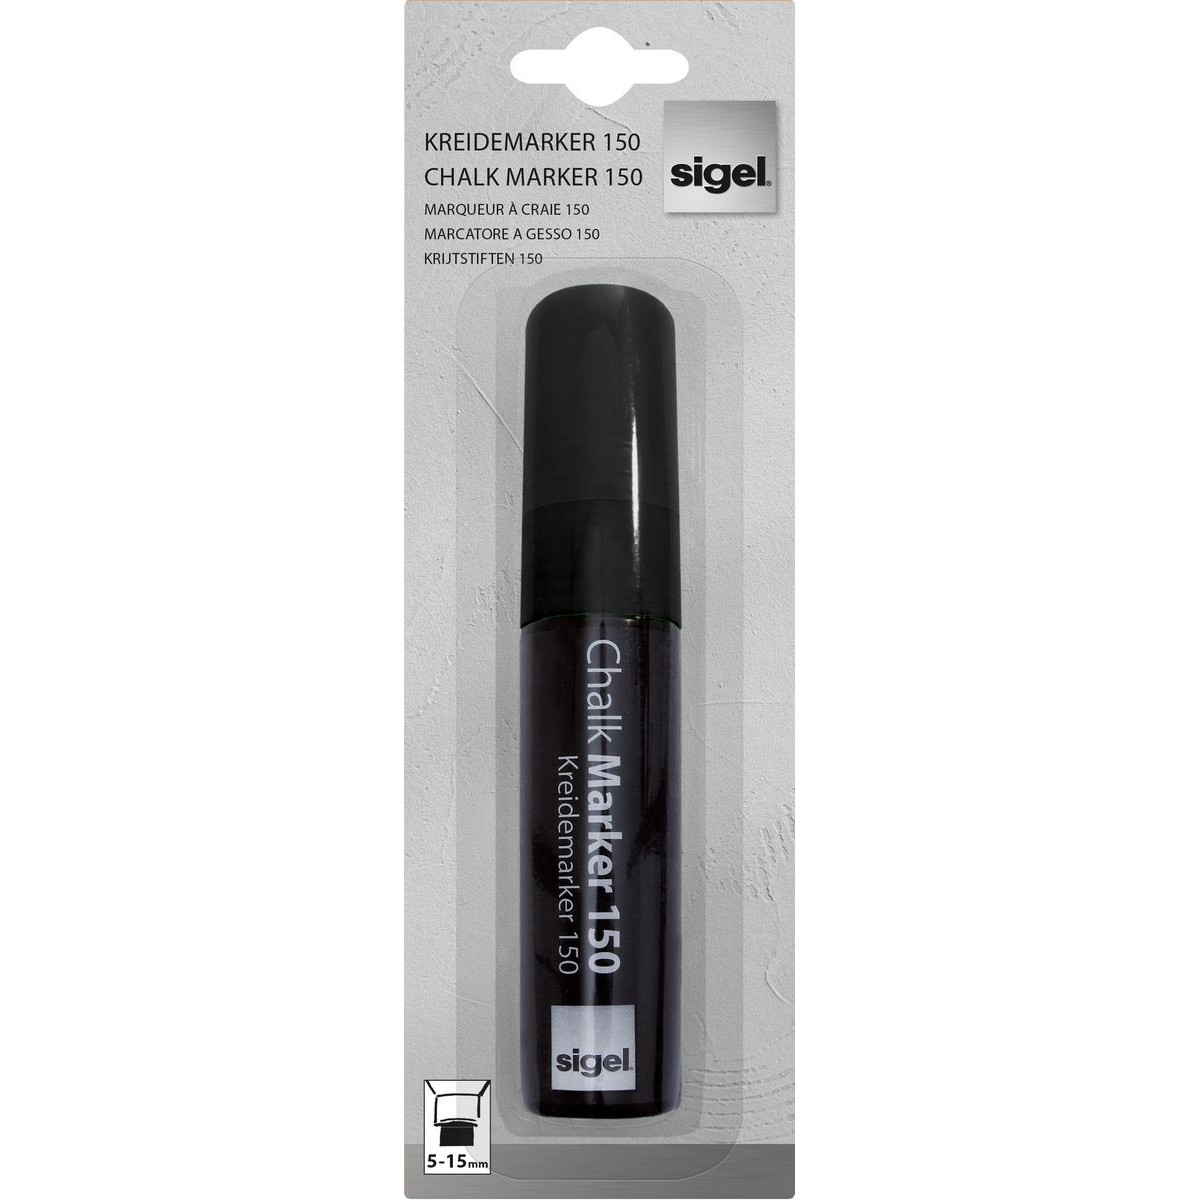 GL170 - Sigel - Chalk Marker 150, chisel tip 5-15 mm - Black